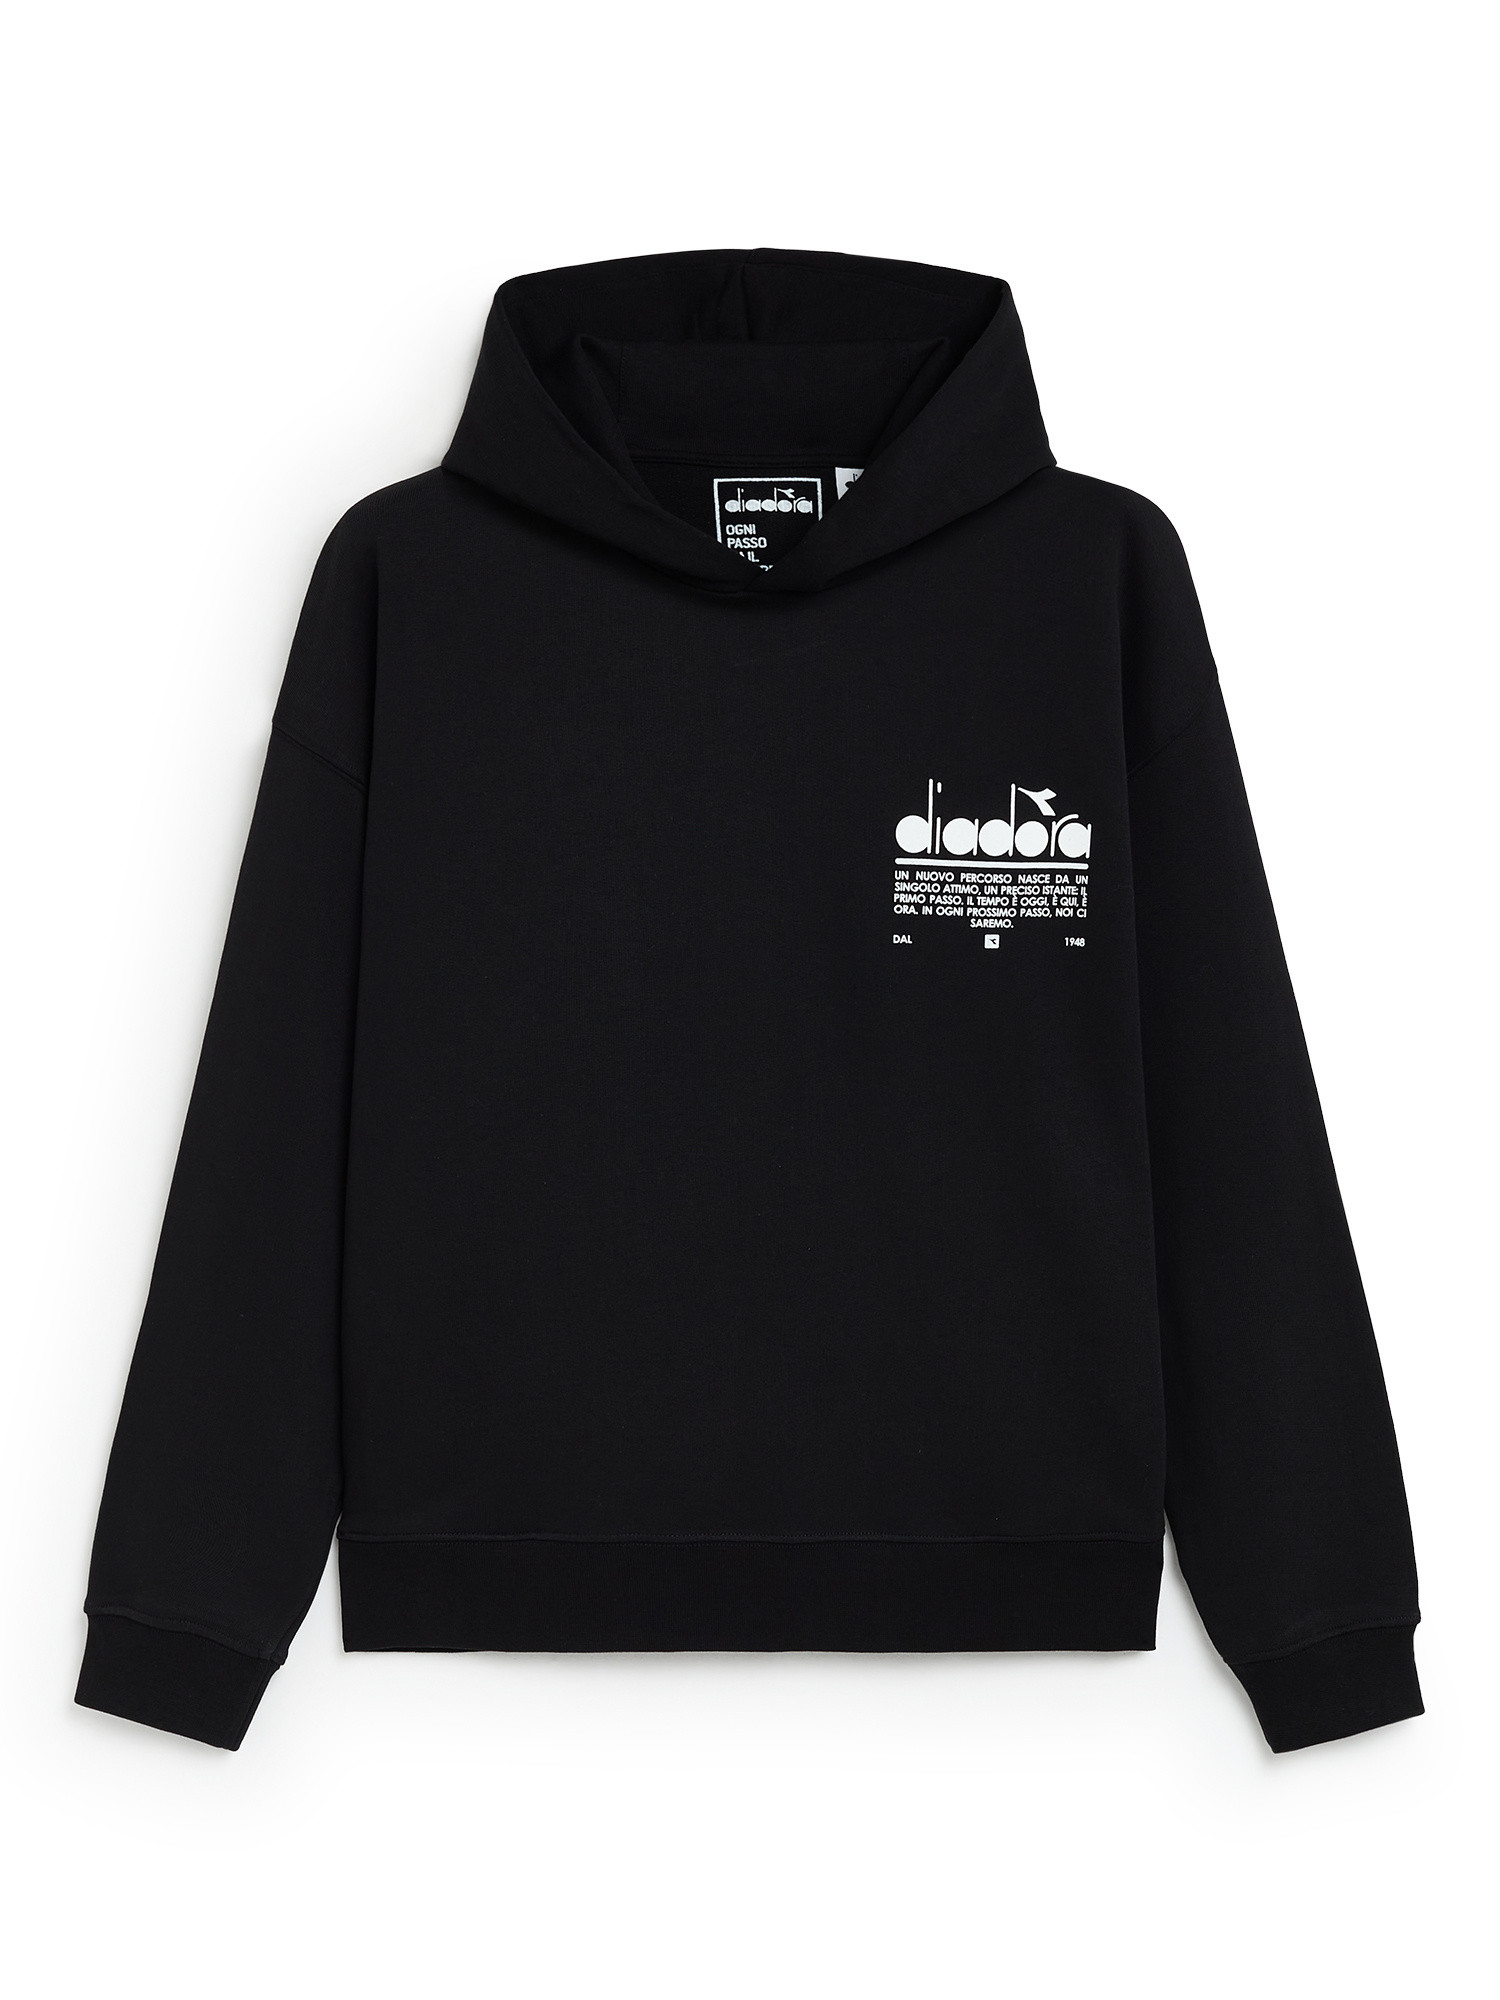 Diadora - Manifesto cotton hoodie, Black, large image number 0